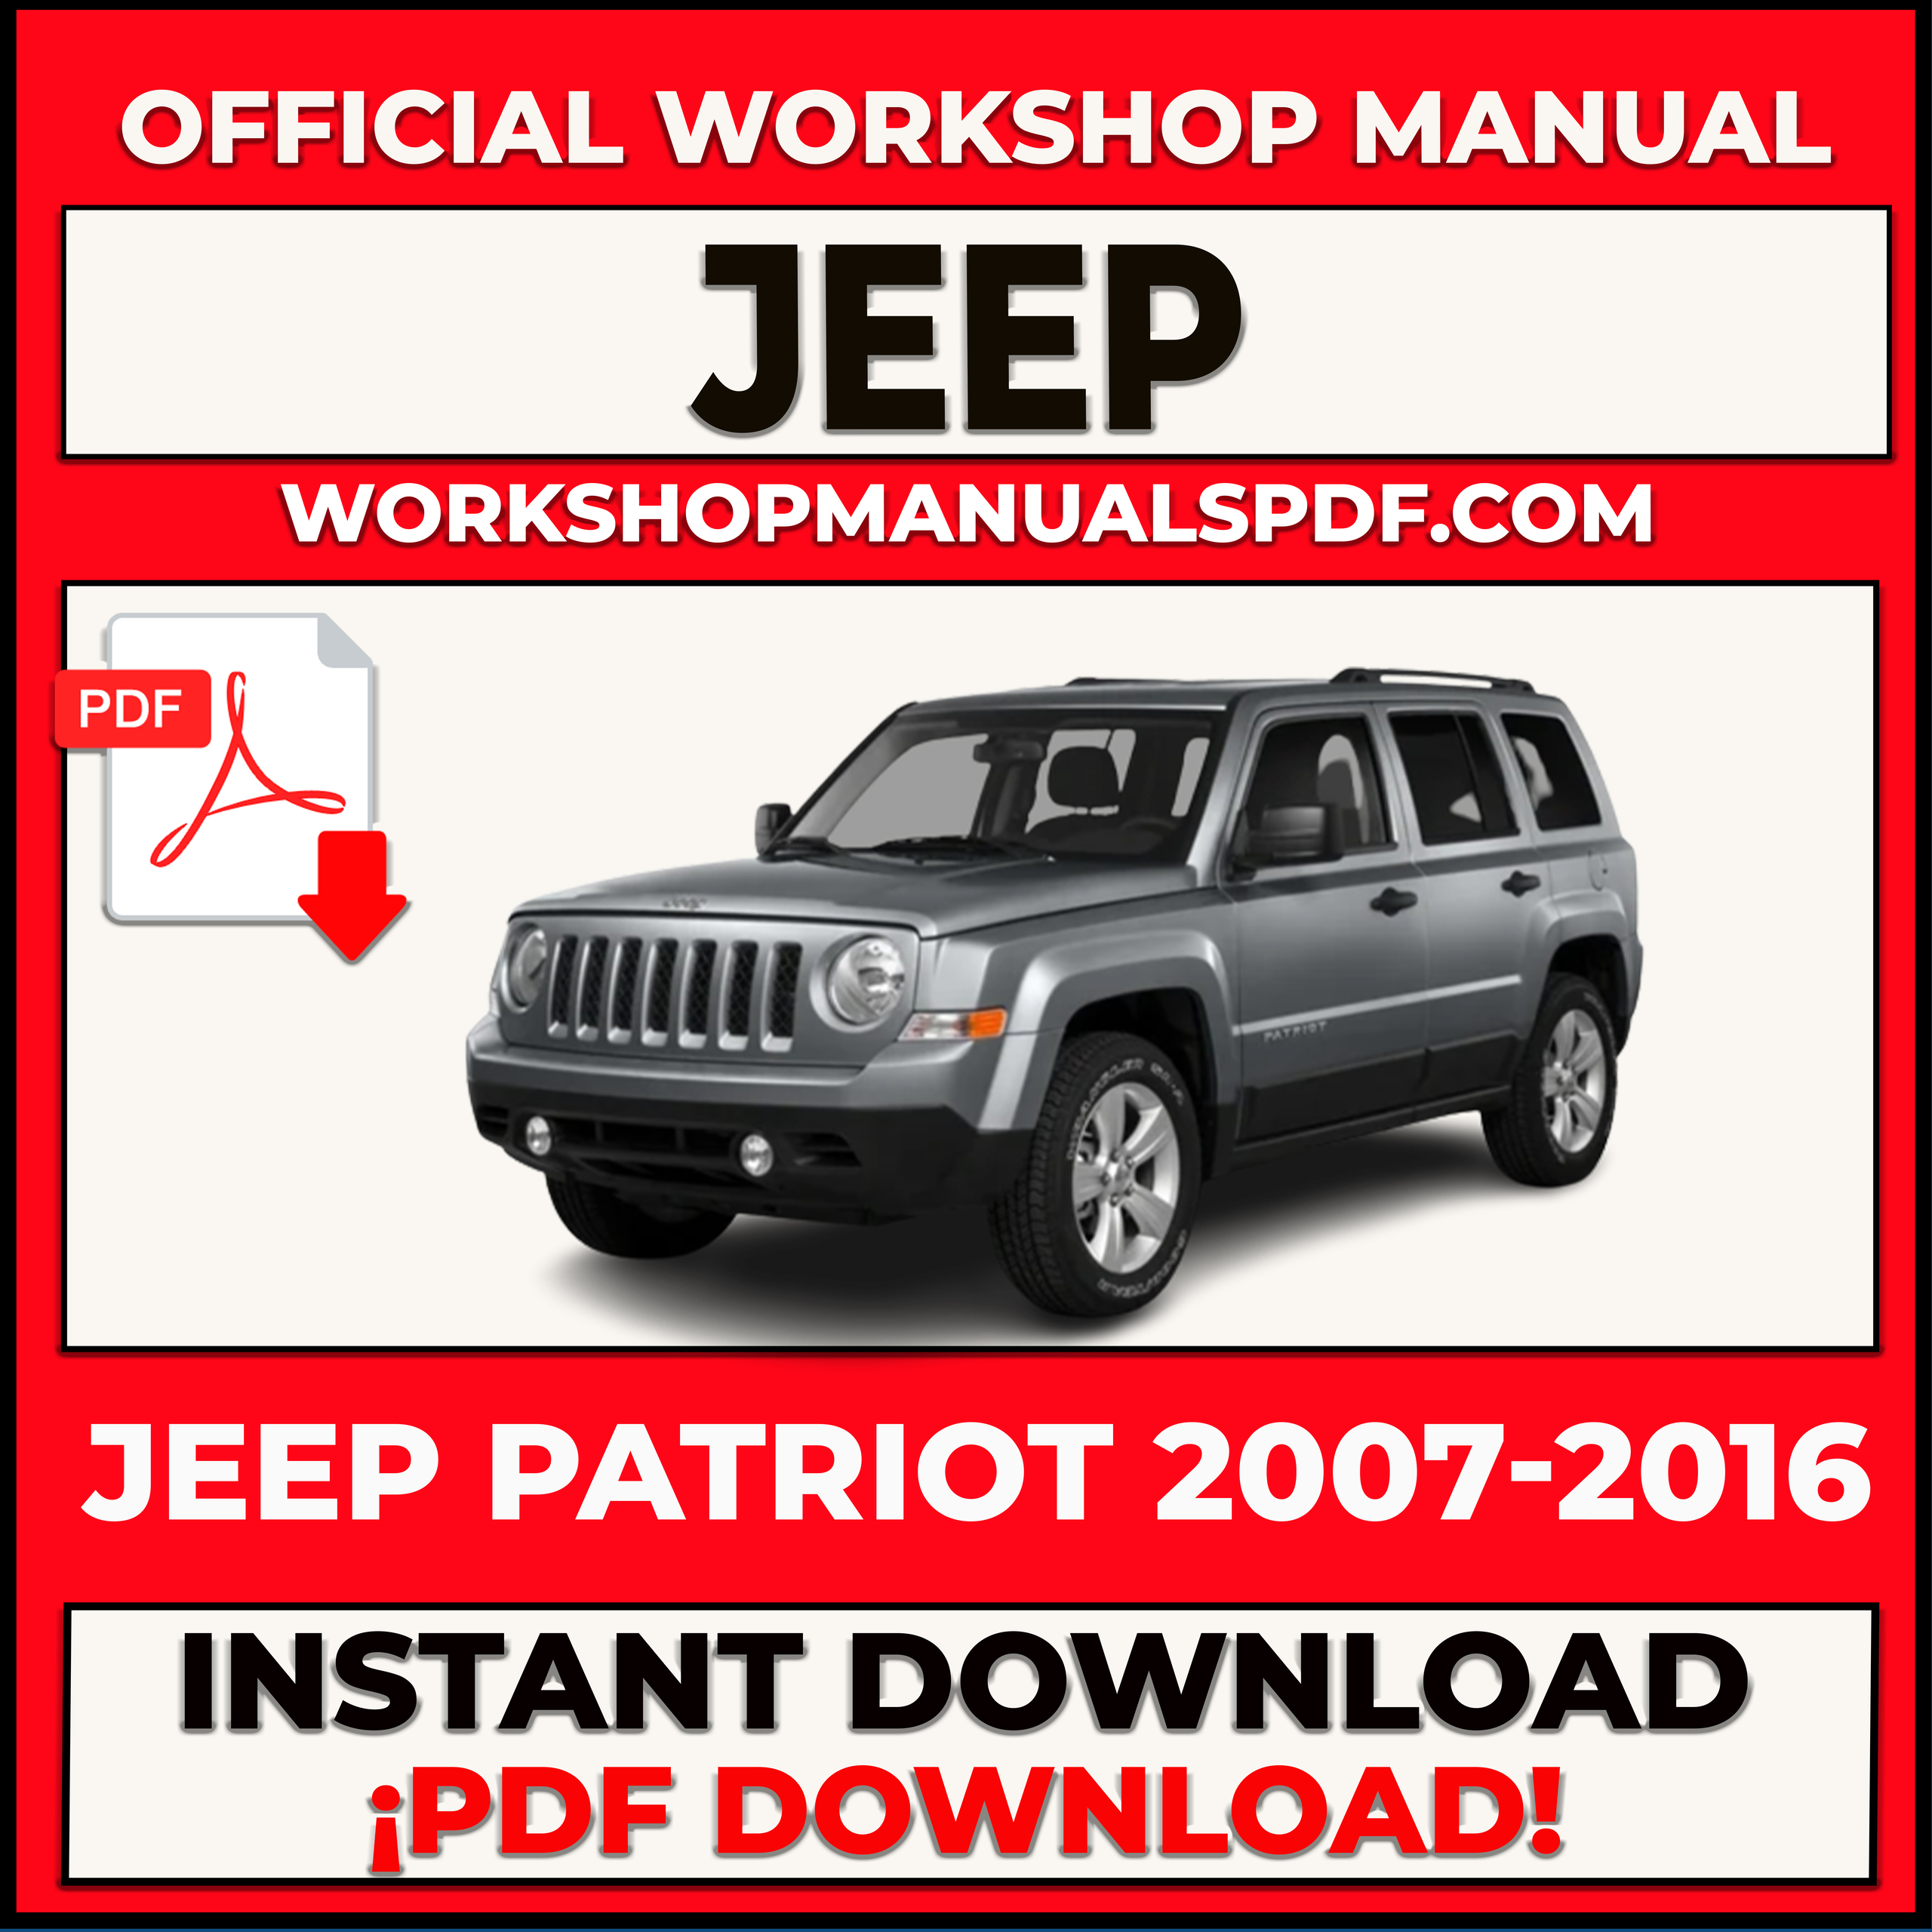 Jeep Patriot 2007-2016 Workshop Repair Manual